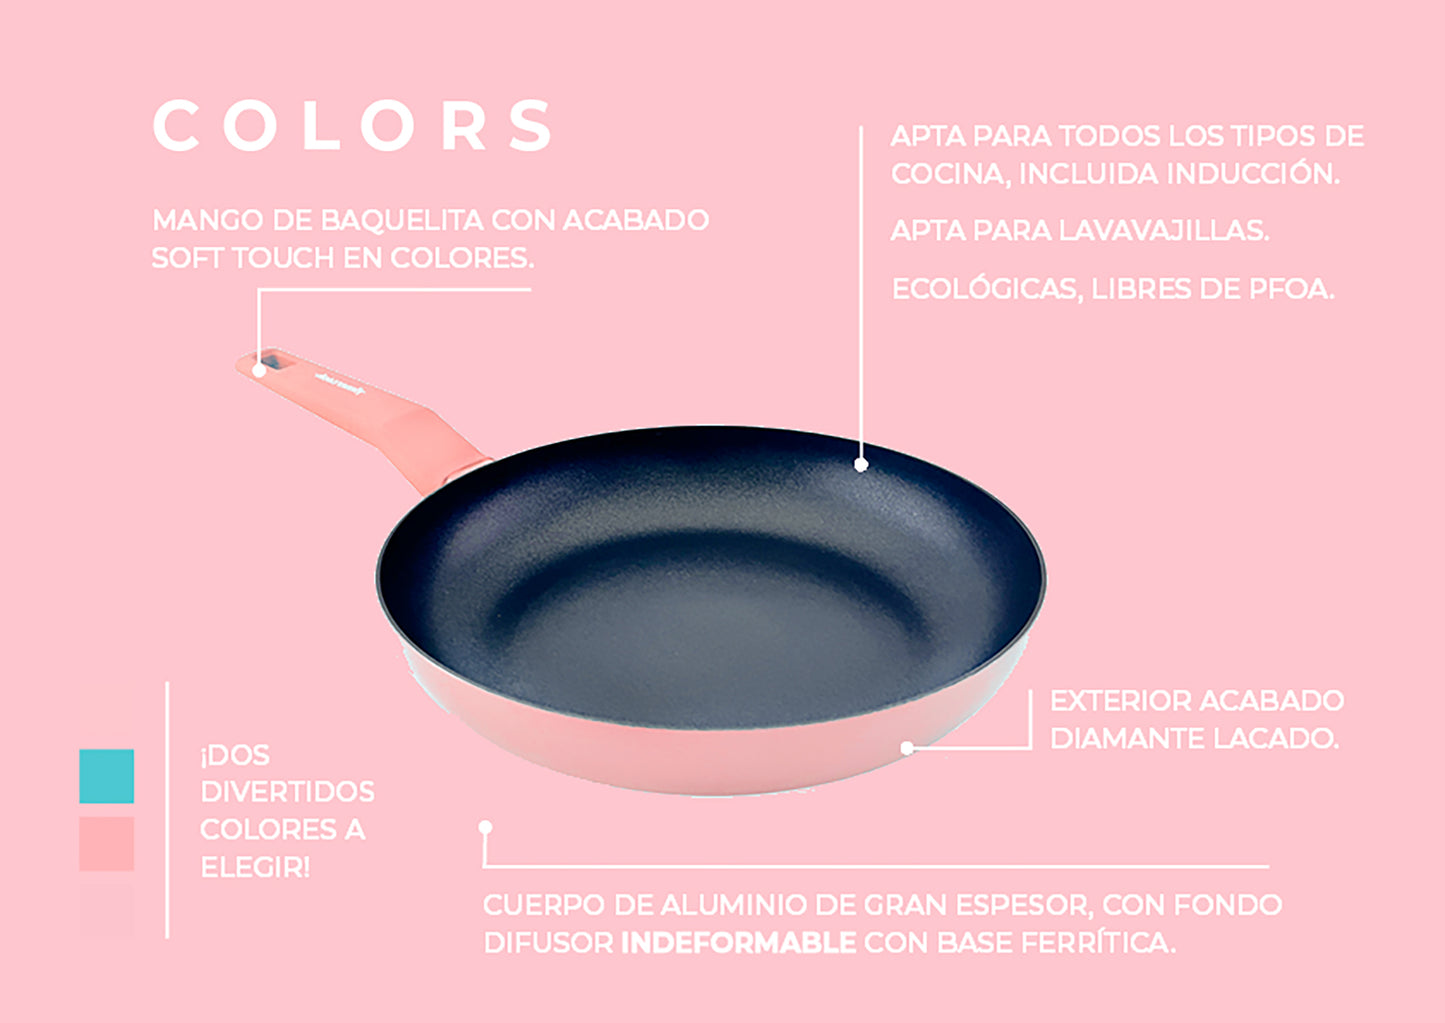 Juego de 2 sartenes COLORS  de 22 y 26 cms Ø rosa pastel, aptas para todo tipo de cocina incluso inducción